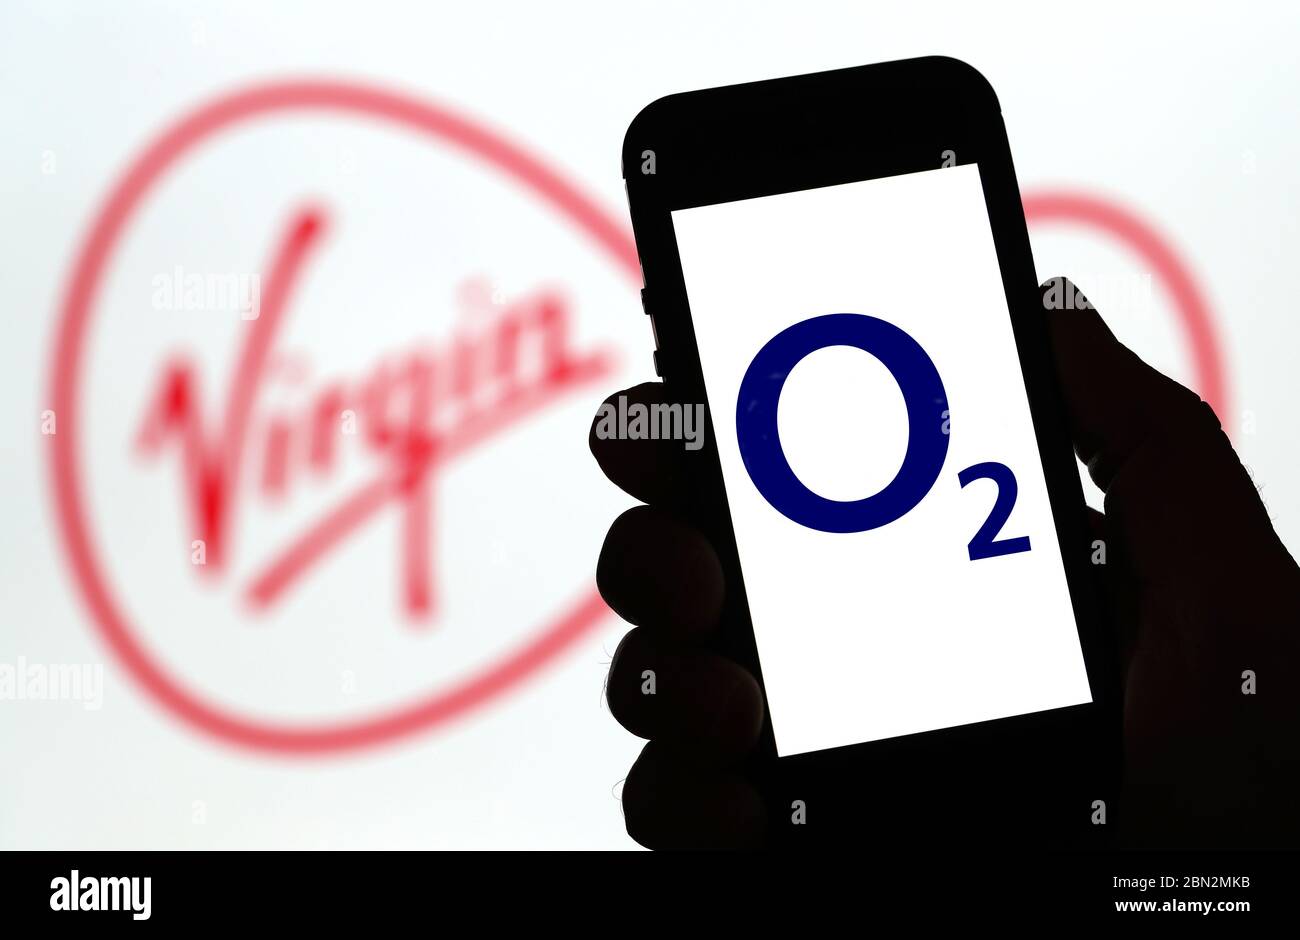 o2-Mobilfunknetz-Logo auf einem Mobiltelefon mit dem Virgin Media-Logo dahinter. (Nur redaktionelle Verwendung) Stockfoto